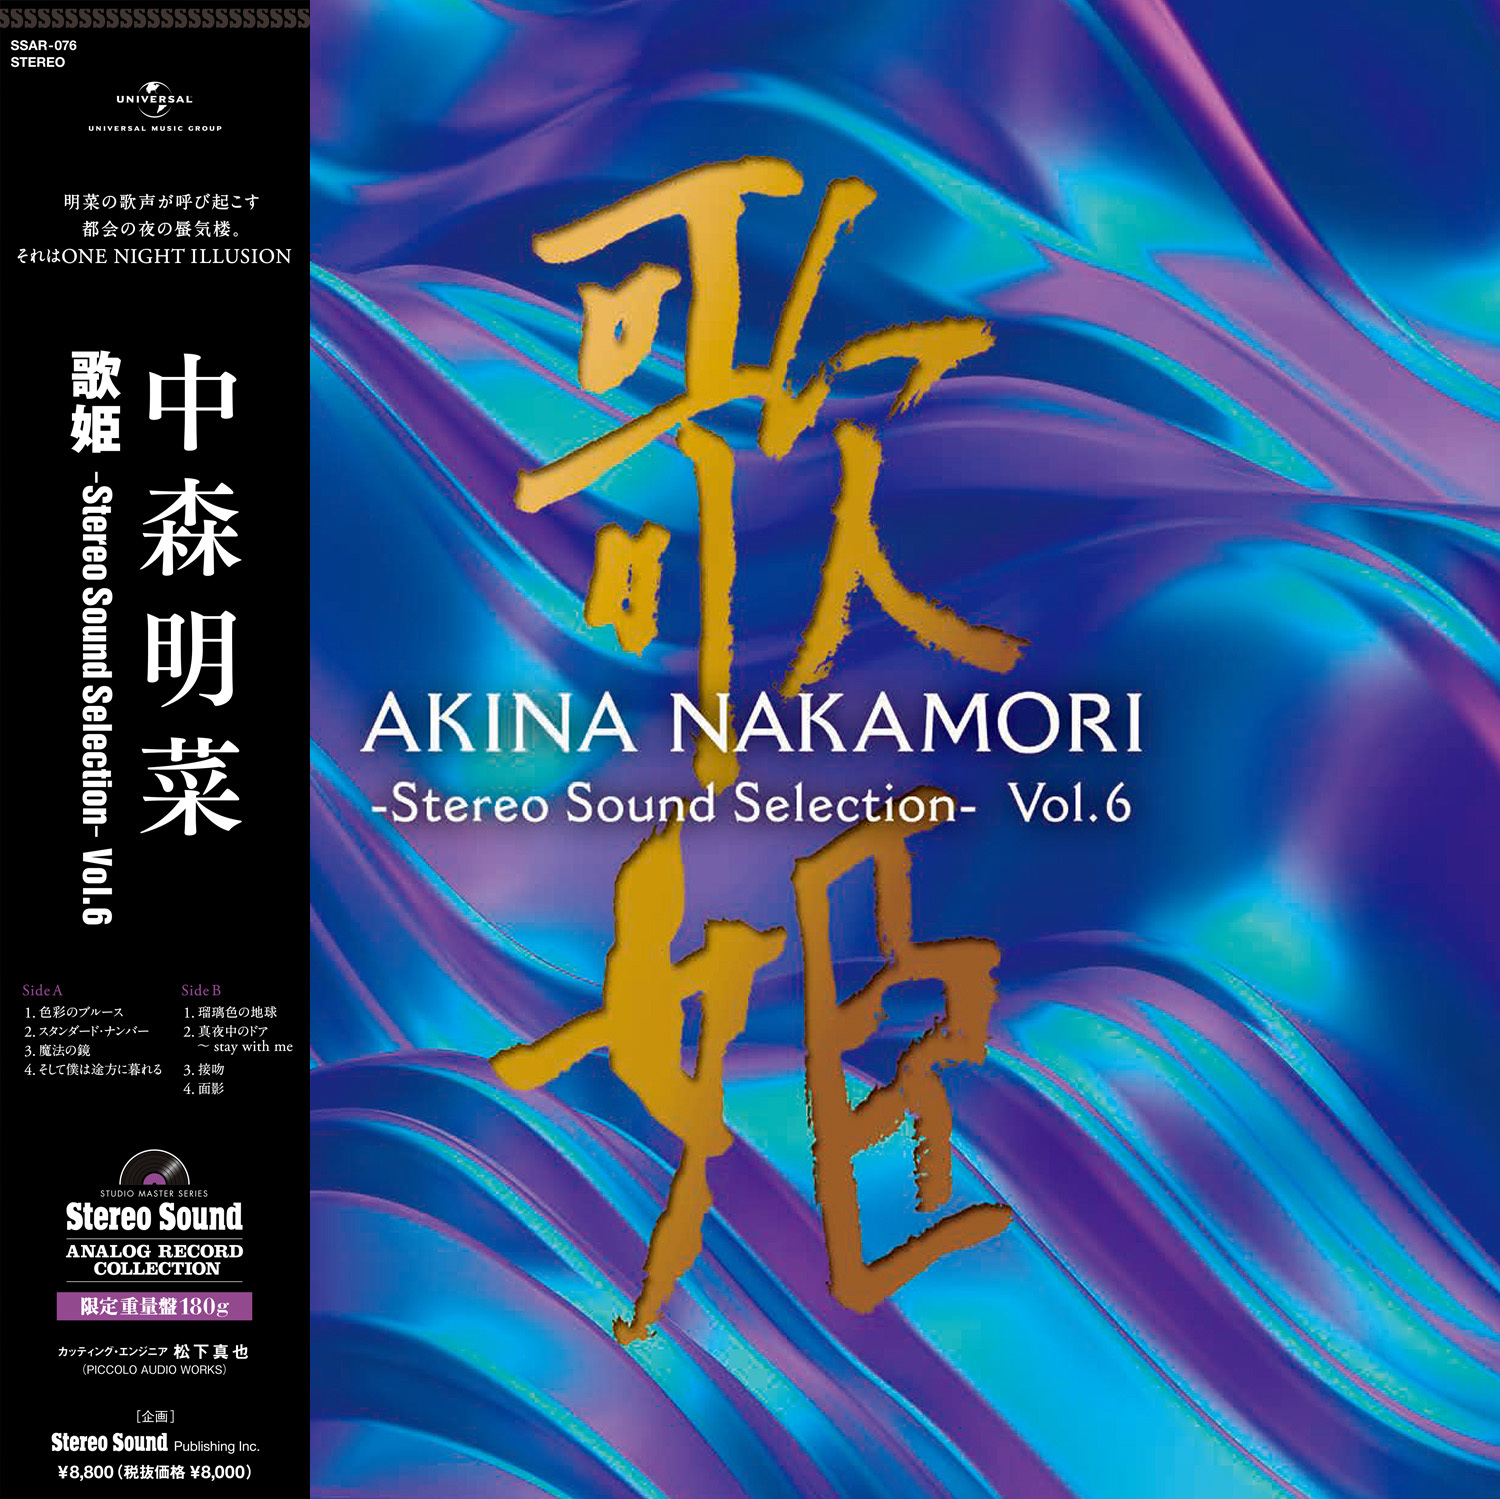 中森明菜『歌姫 -Stereo Sound Selection- Vol.6』　
ステレオサウンドのオリジナル選曲・構成による
アナログレコードを11月16日(水)発売